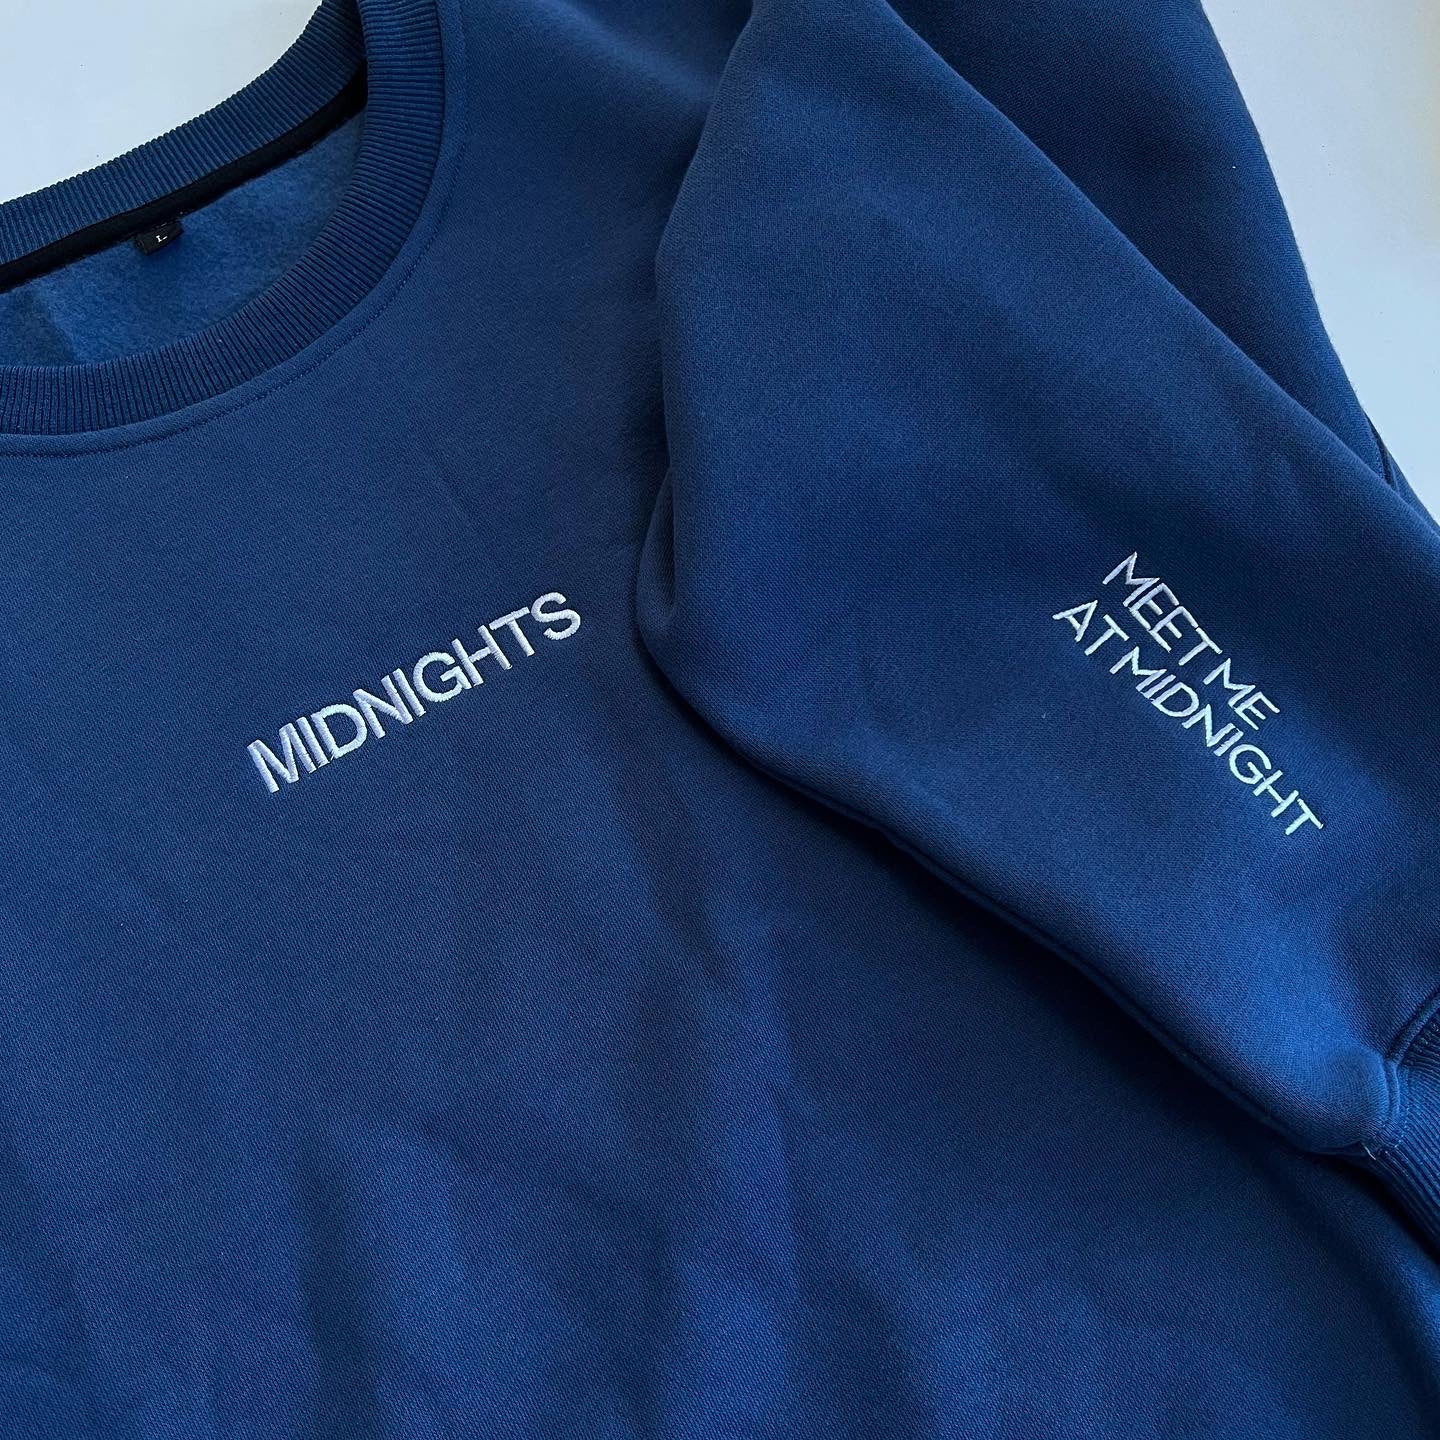 Midnights Sweatshirt (Pre-Order) - Emacity Threads